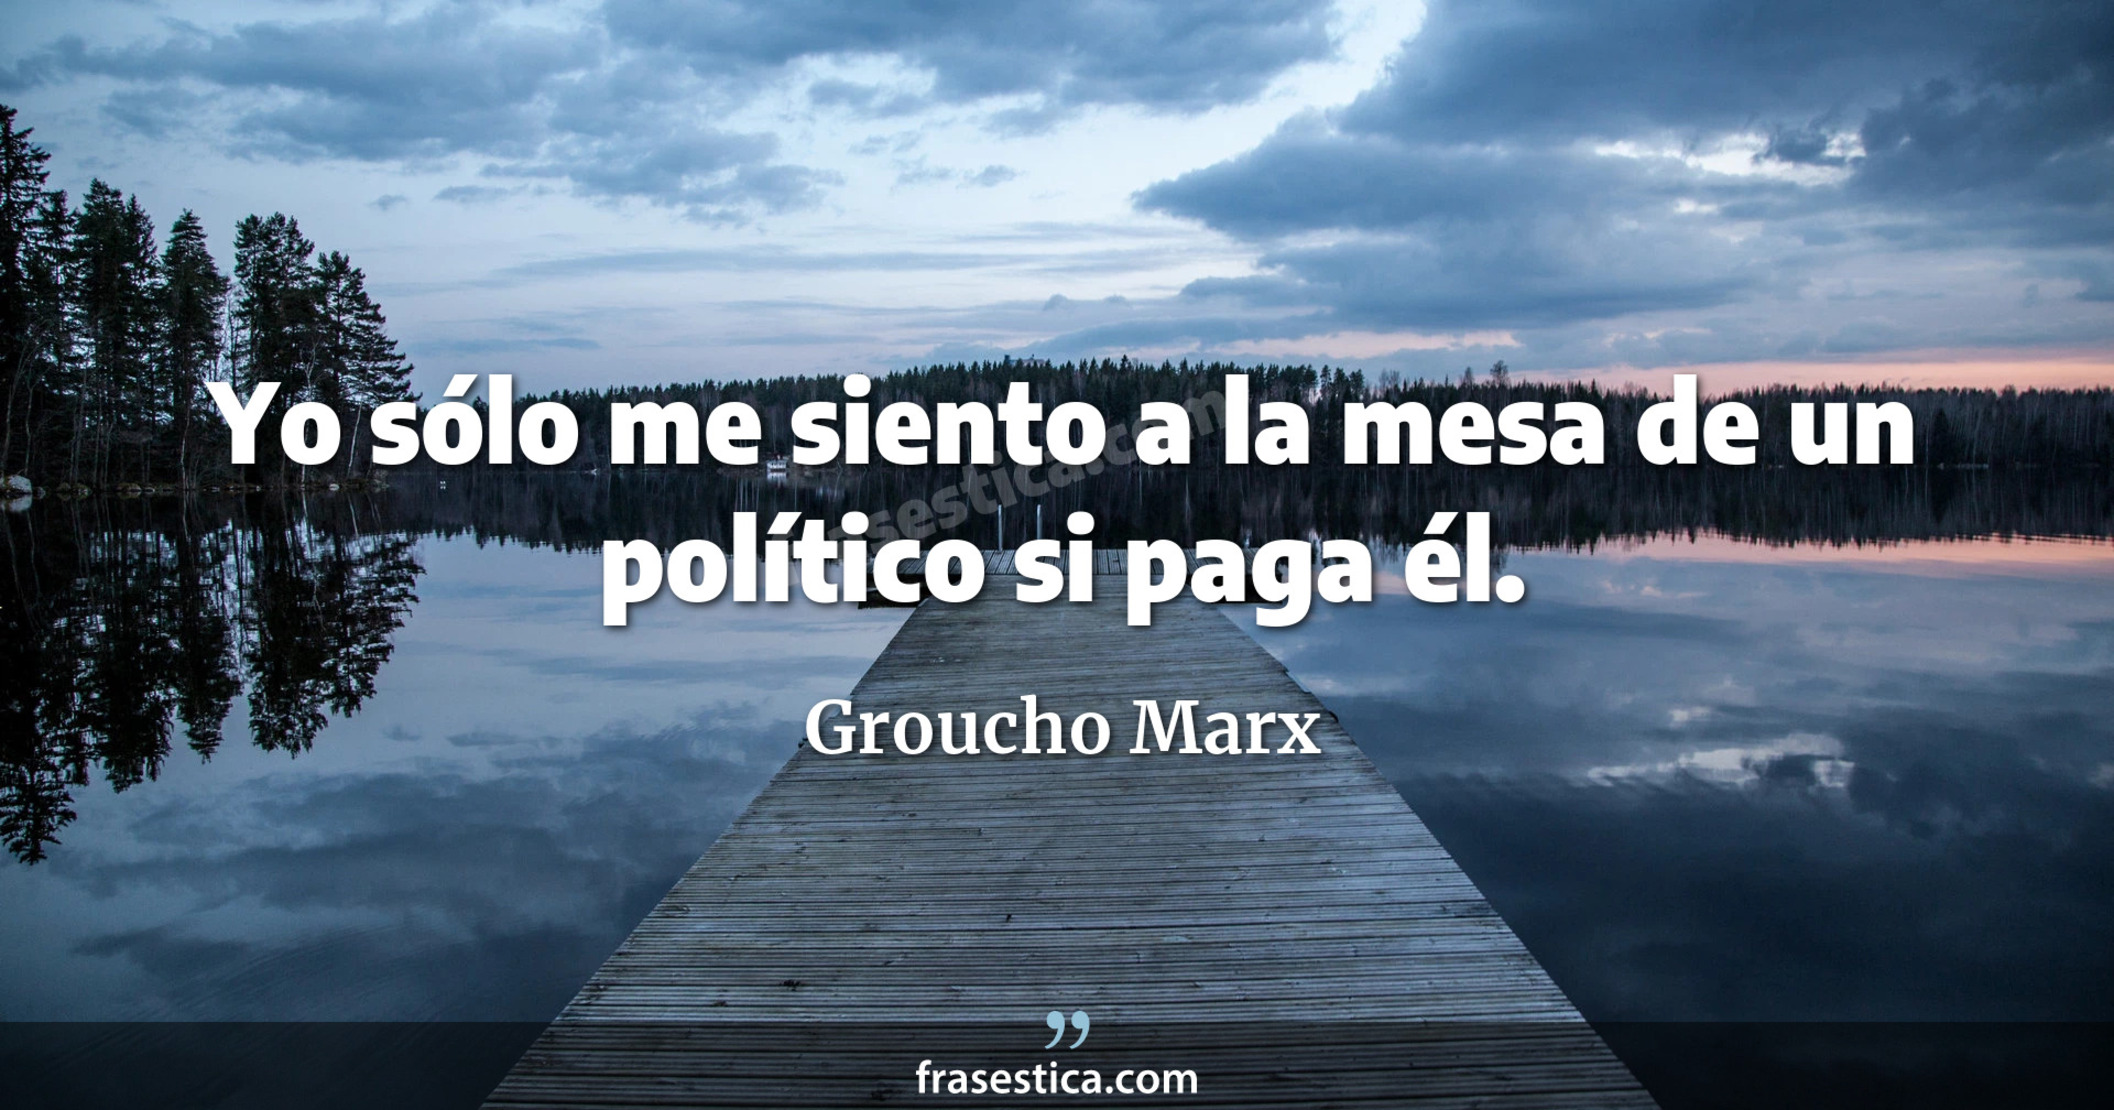 Yo sólo me siento a la mesa de un político si paga él. - Groucho Marx